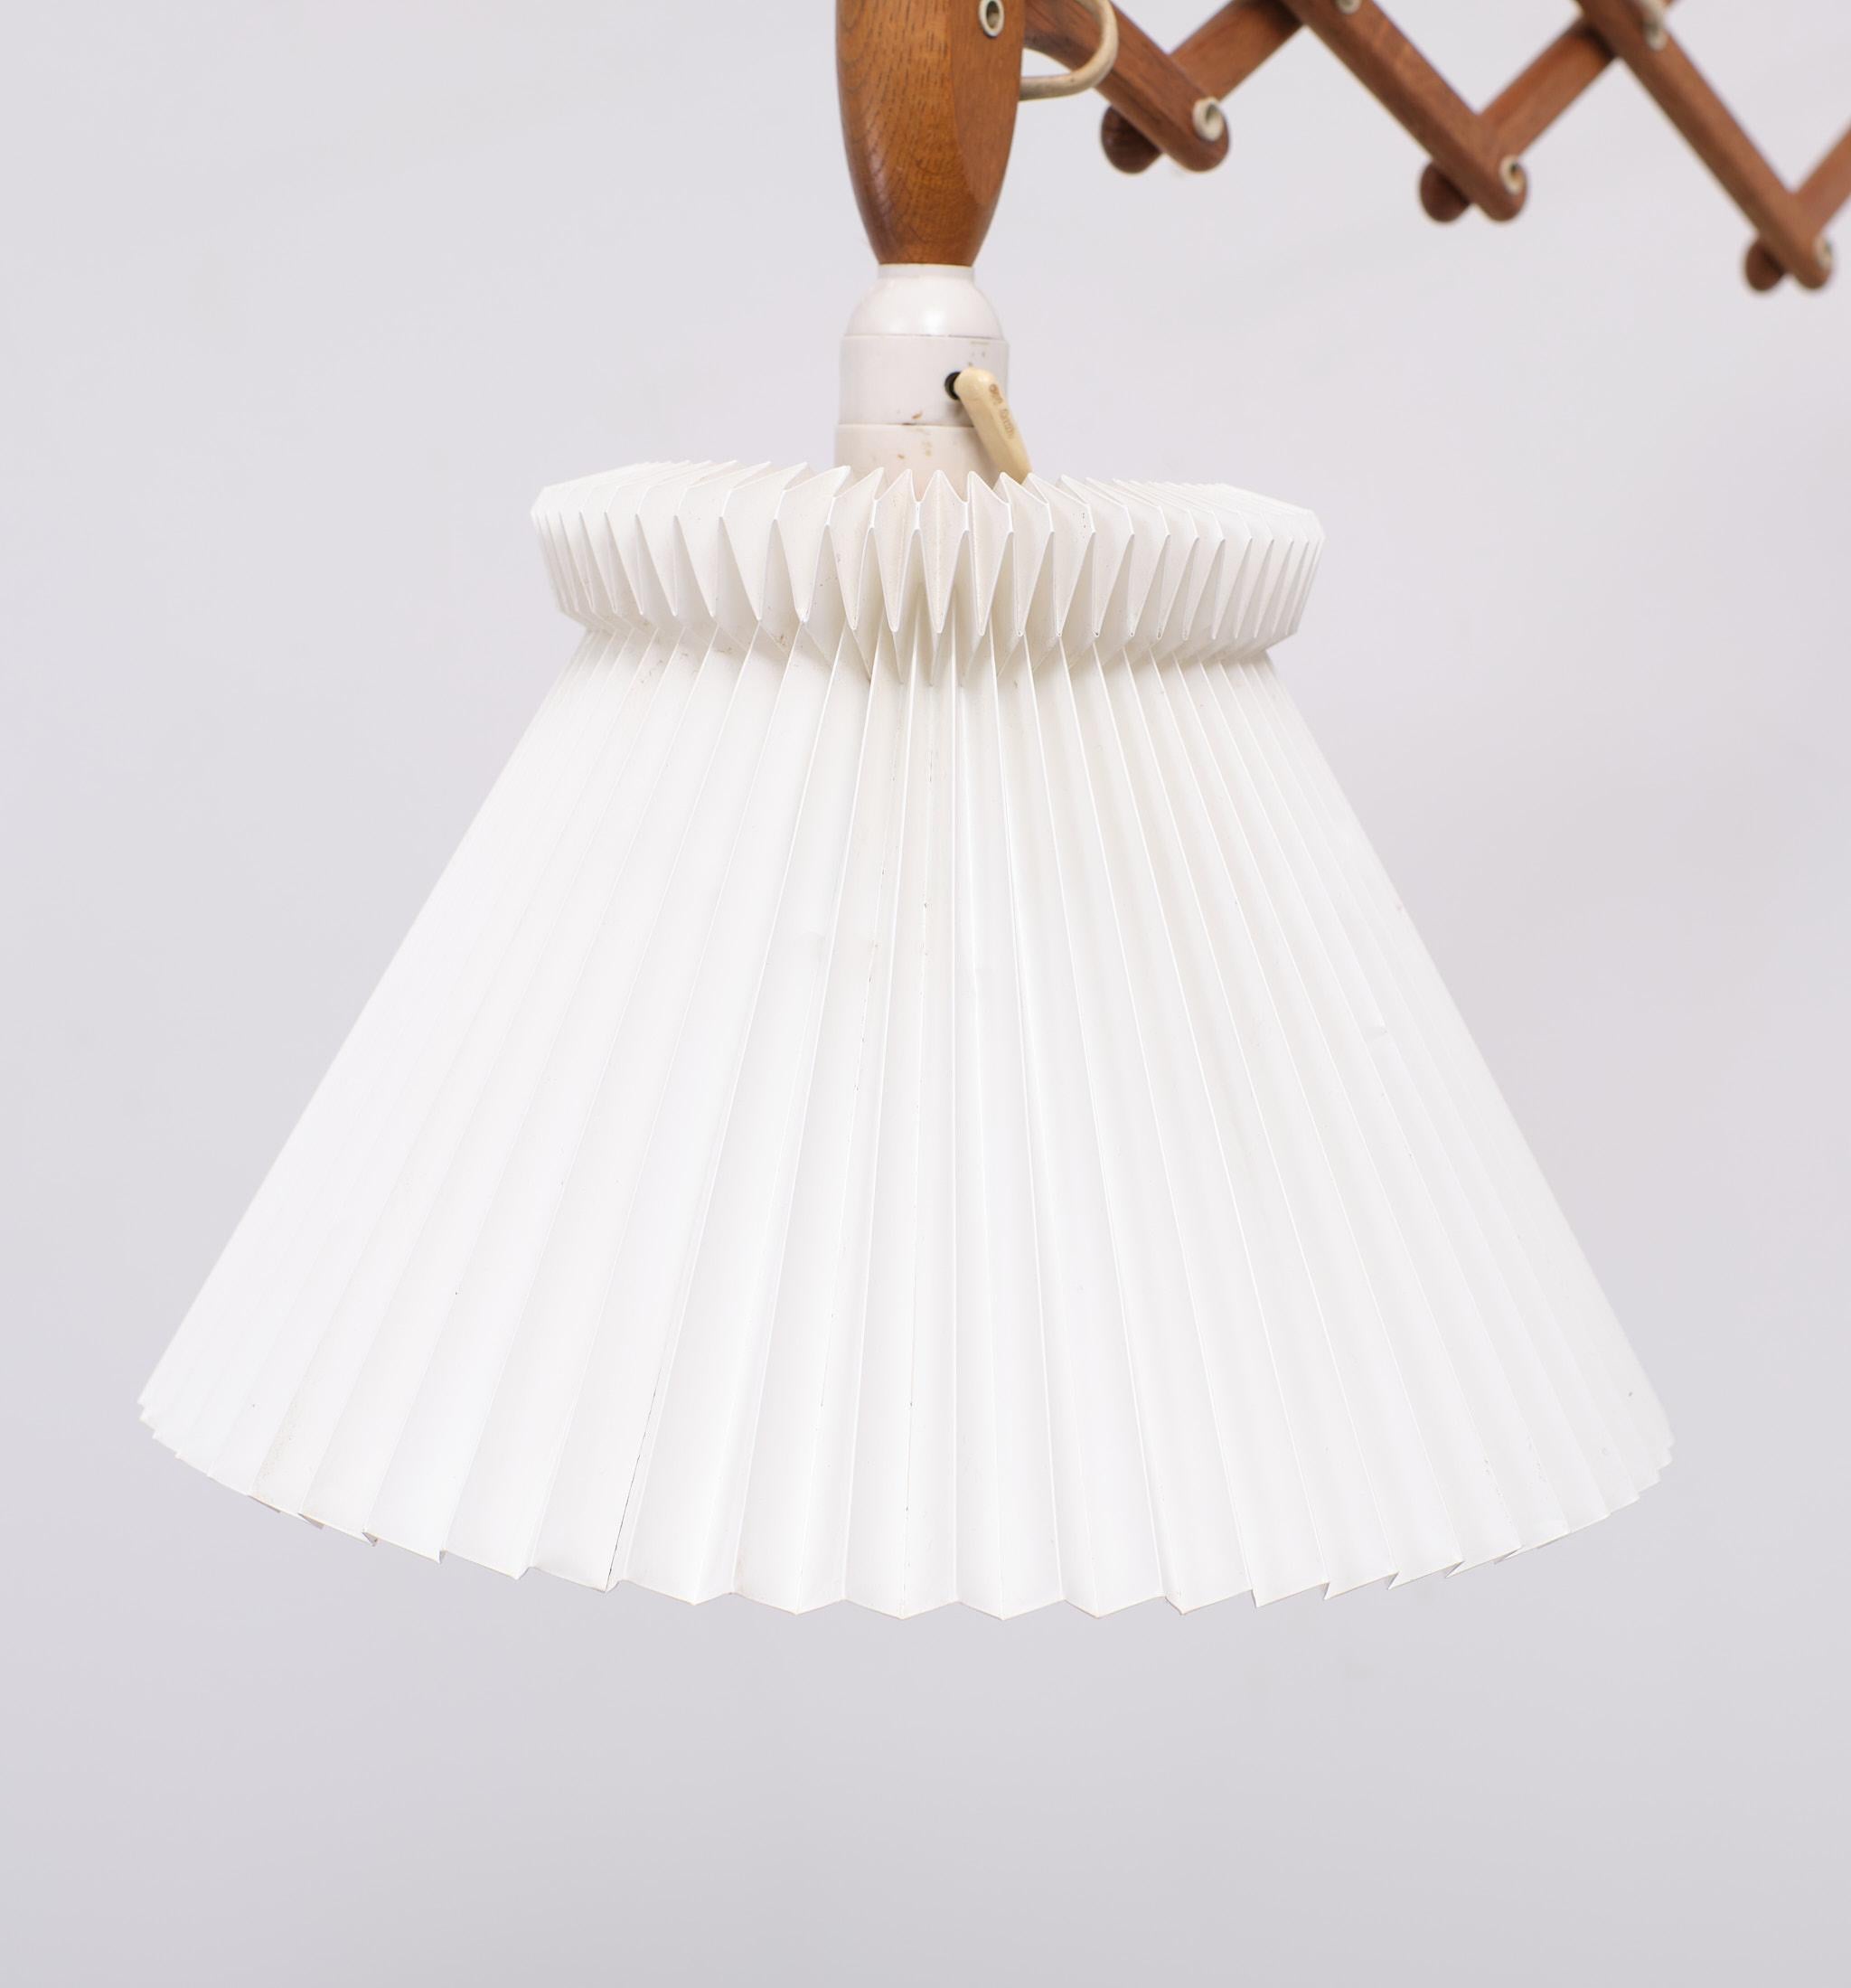 Large Le Klint Teak Scissor Wall Lamp 1950s Demark For Sale 1